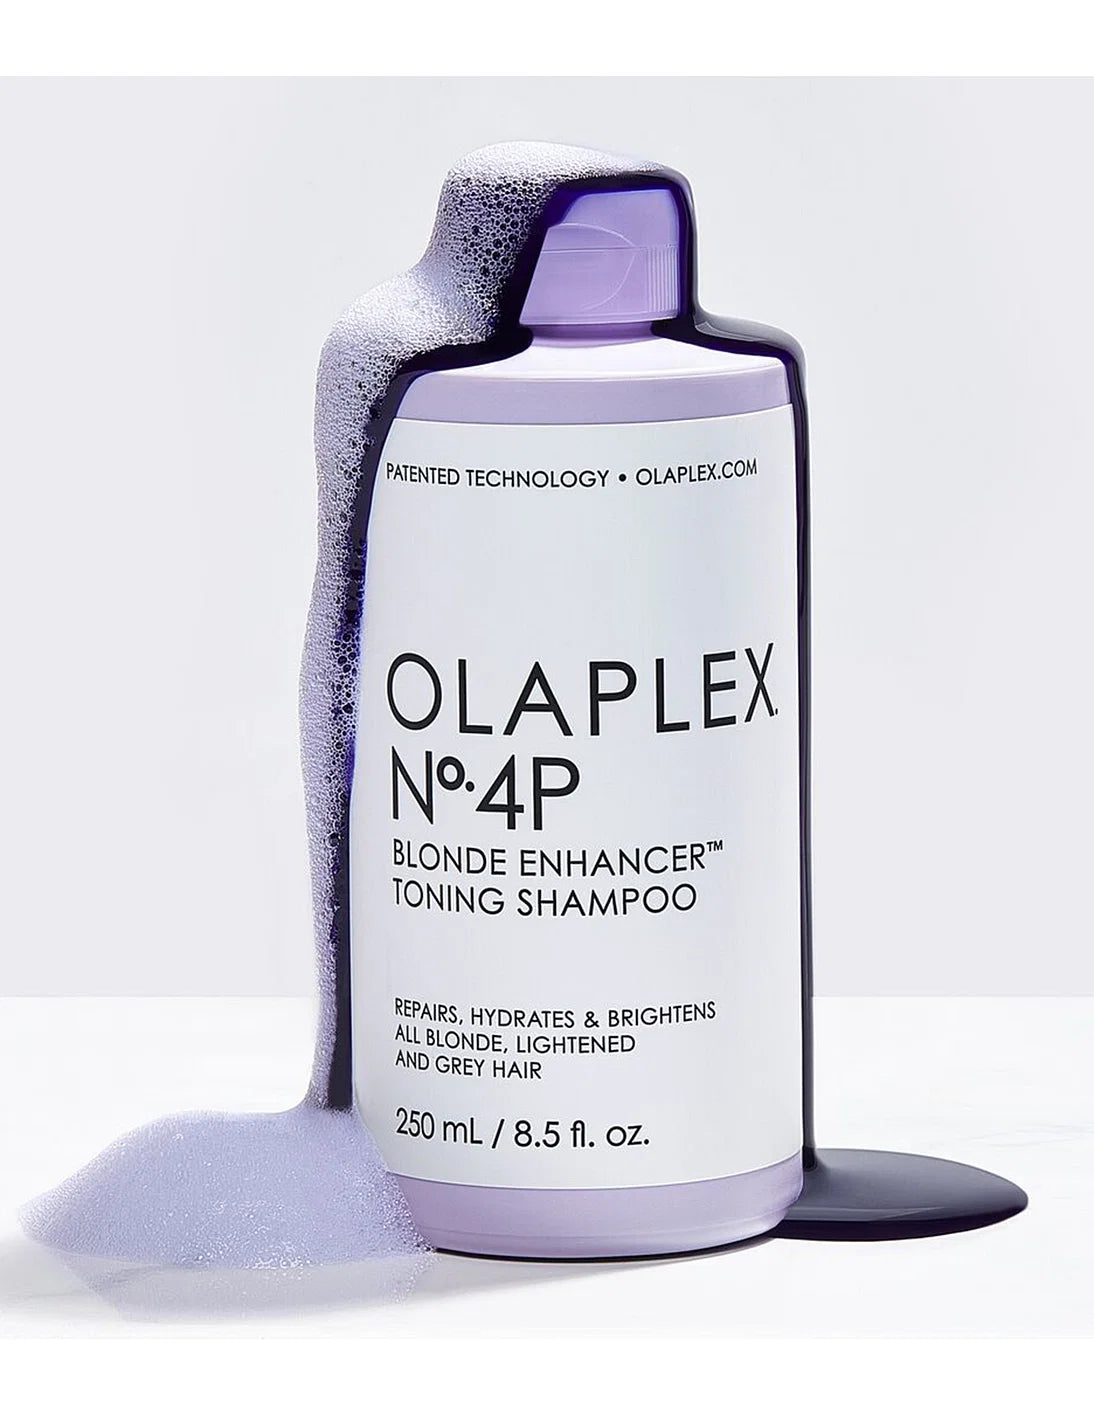 Olaplex No 4P Bond EnhancerToning Shampoo